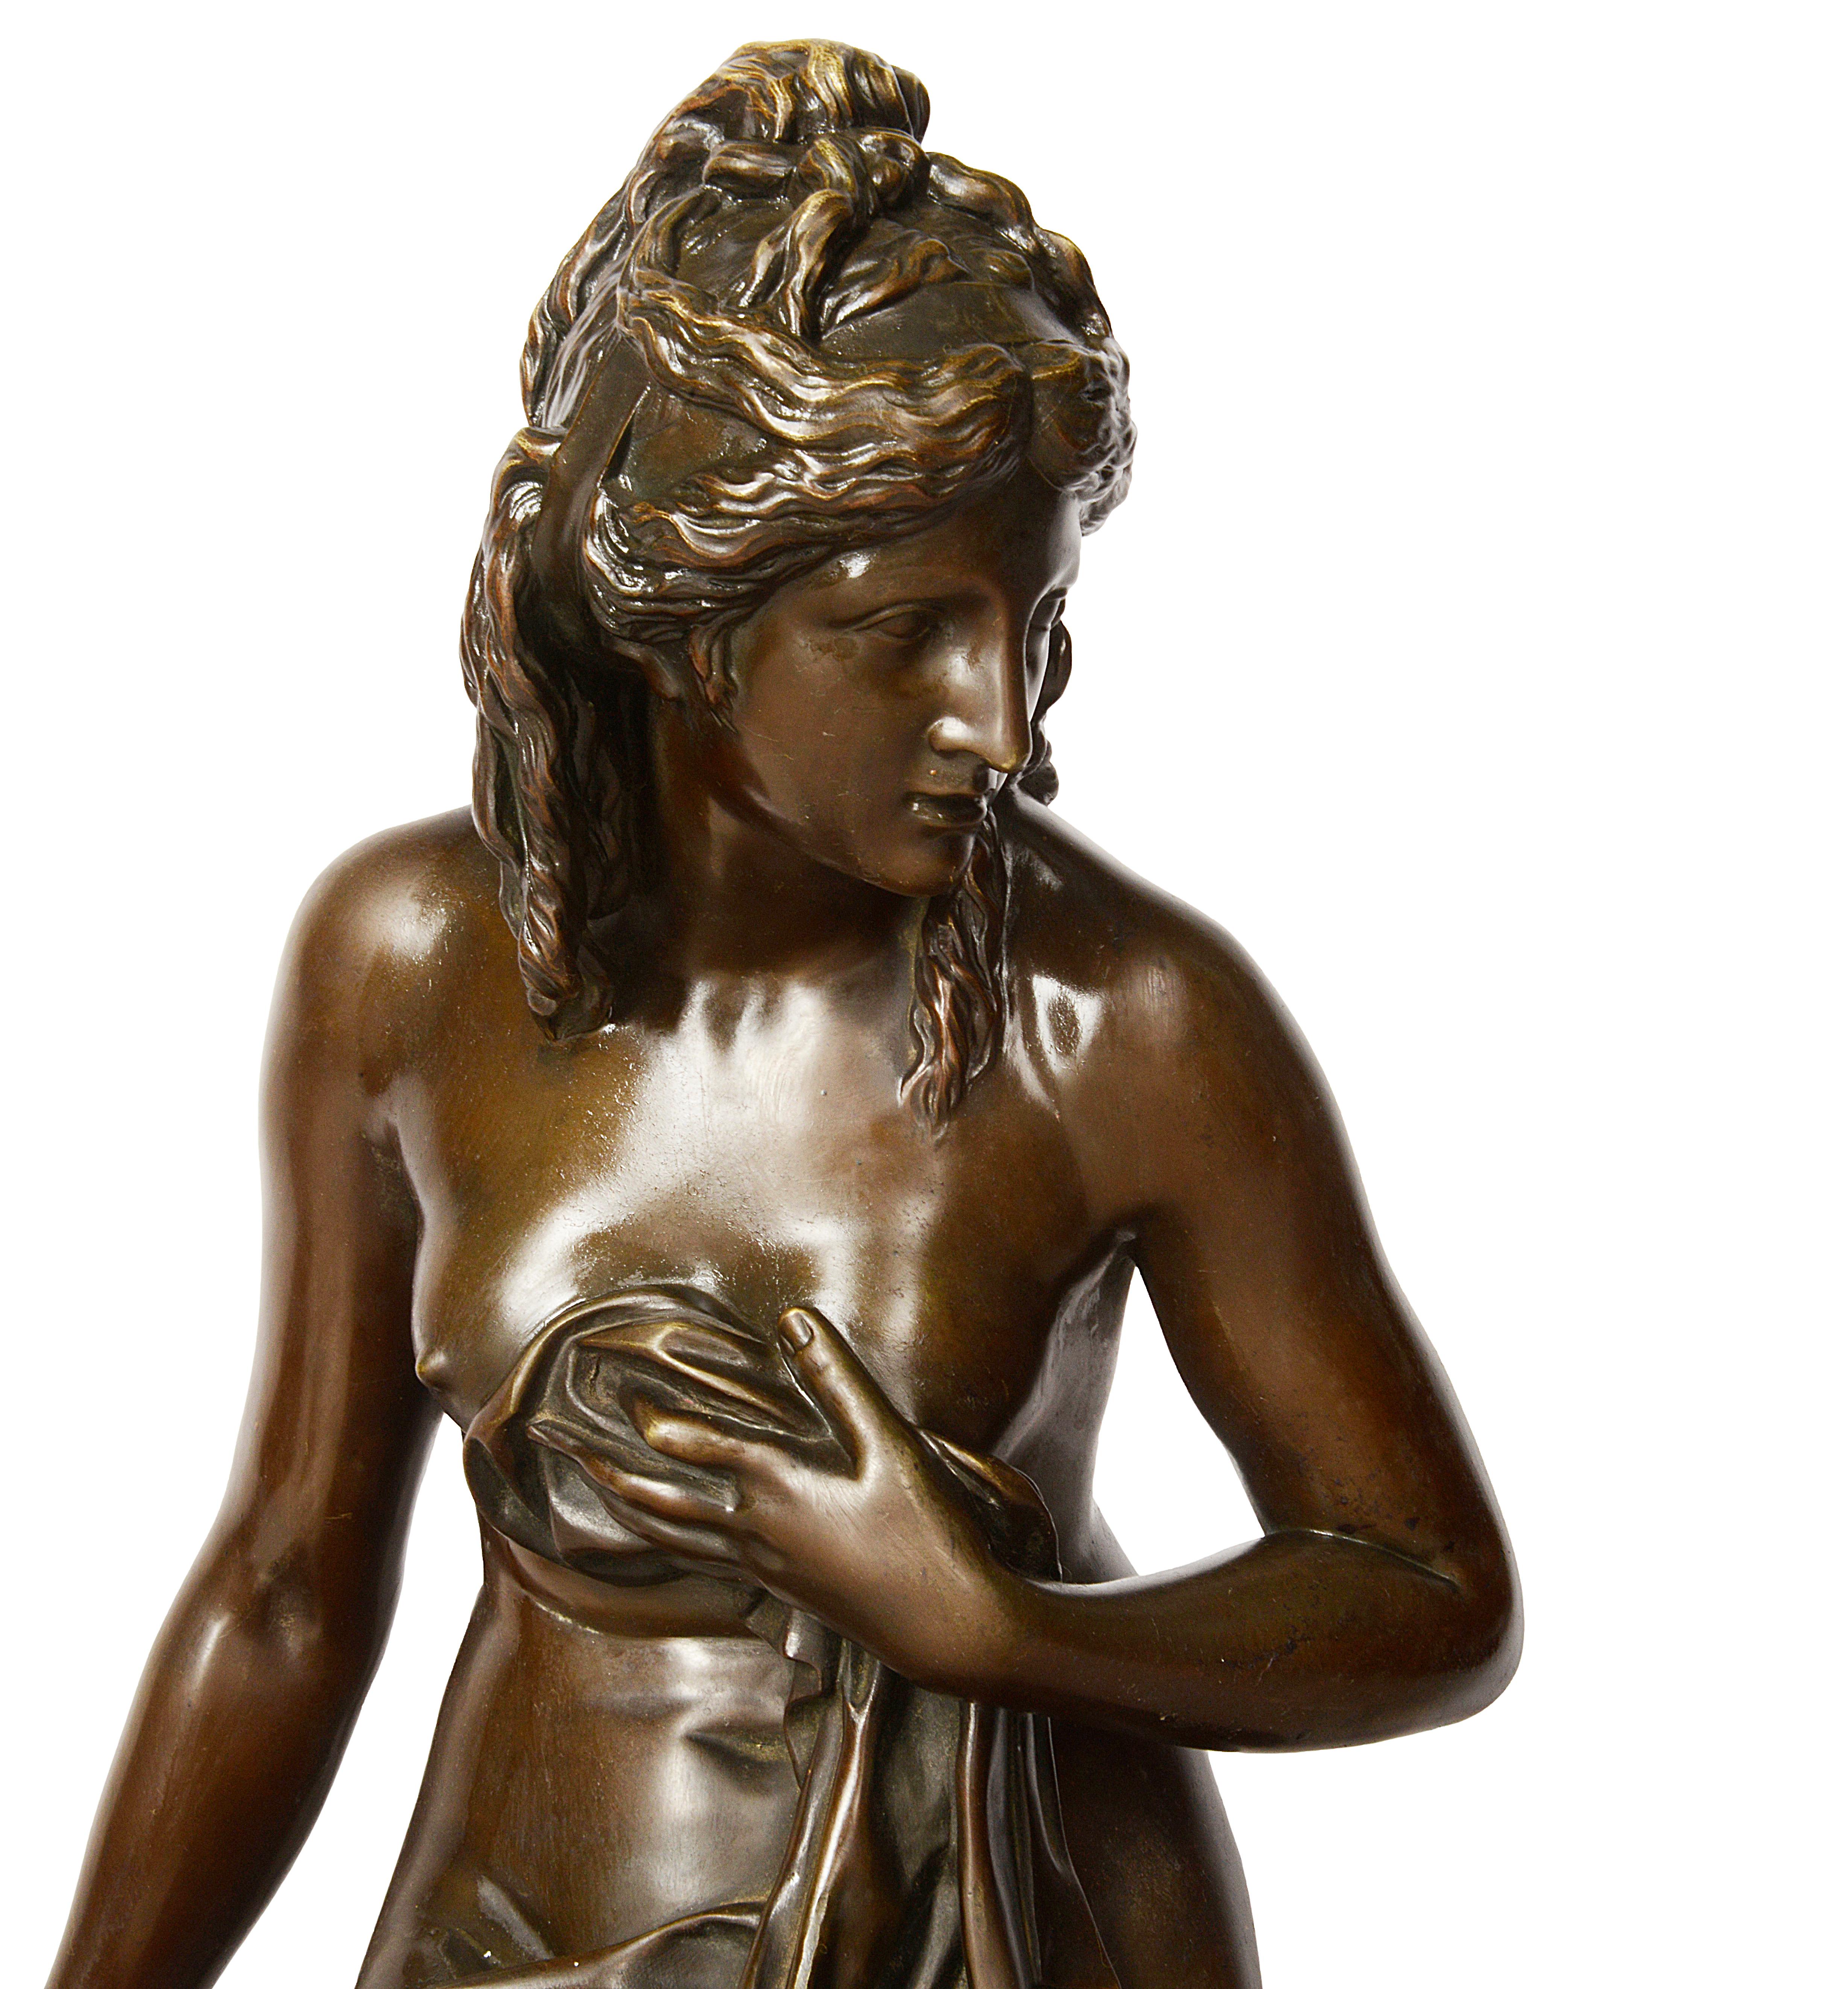 Très belle statue en bronze du XIXe siècle représentant une femme semi-nue, Amalthée, dans la laiterie de Marie-Antoinette. L'original est en marbre et date de 1787.

Amalthée est parfois représentée comme la chèvre qui a nourri l'enfant-dieu dans